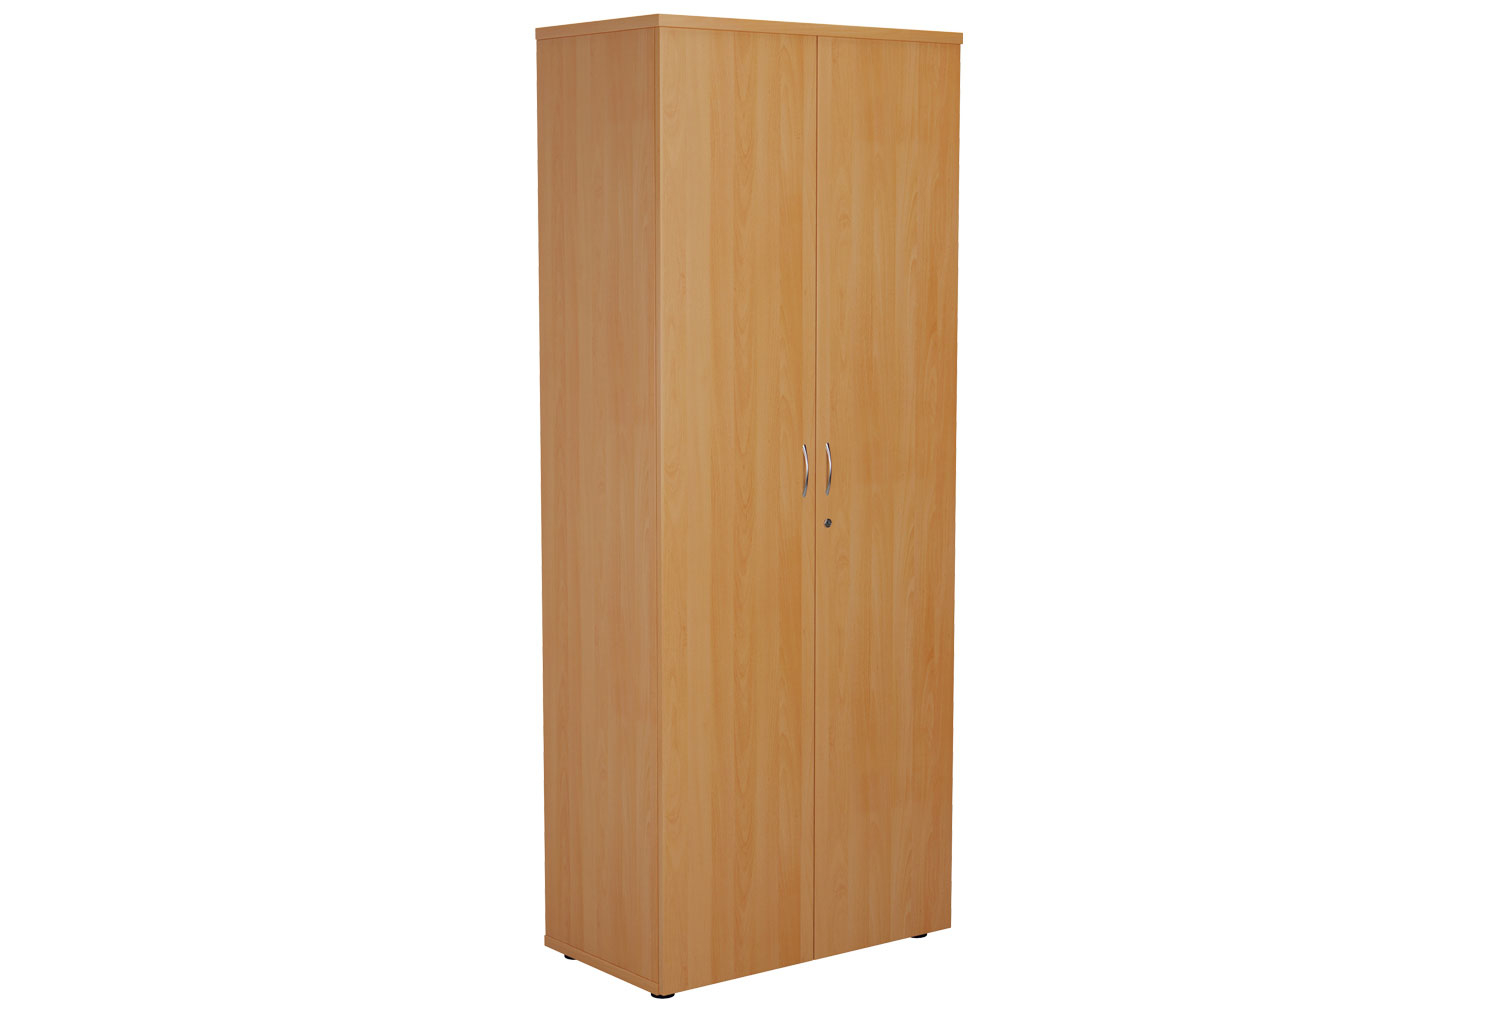 Proteus Double Door Cupboard, 4 Shelf - 80wx45dx200h (cm), Beech, Fully Installed